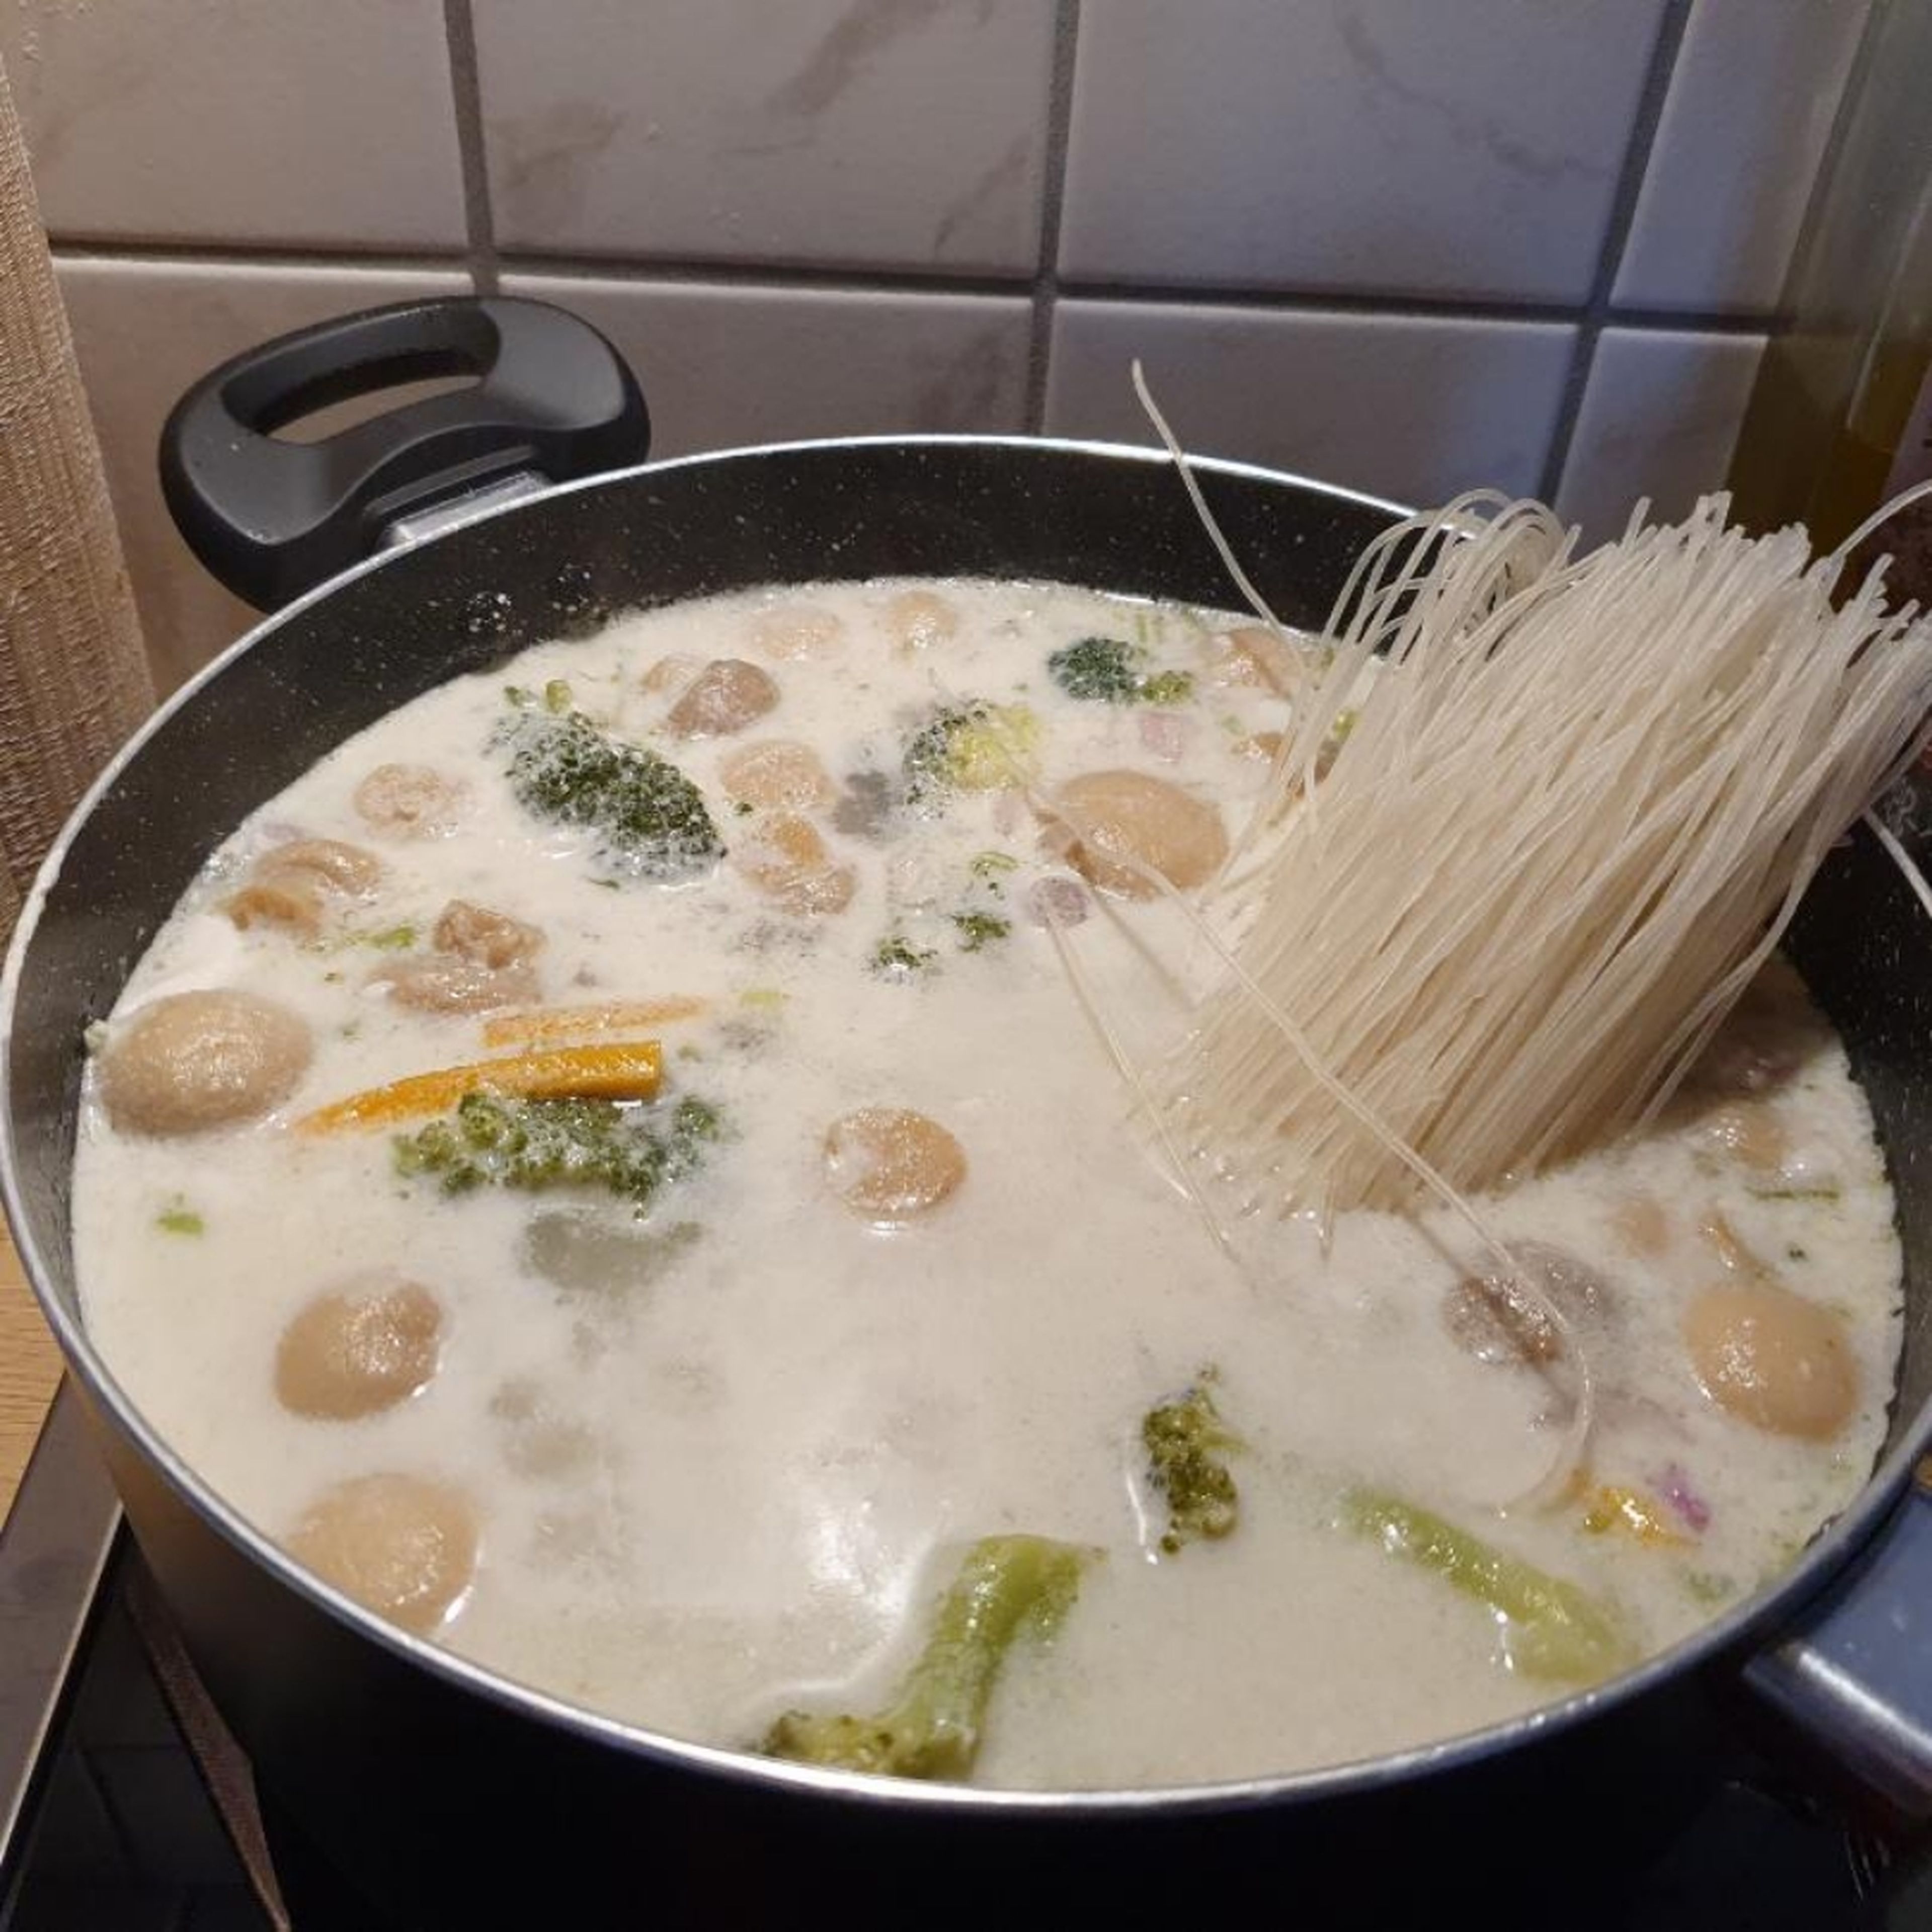 Champignons abtropfen lassen und zur Suppe geben.